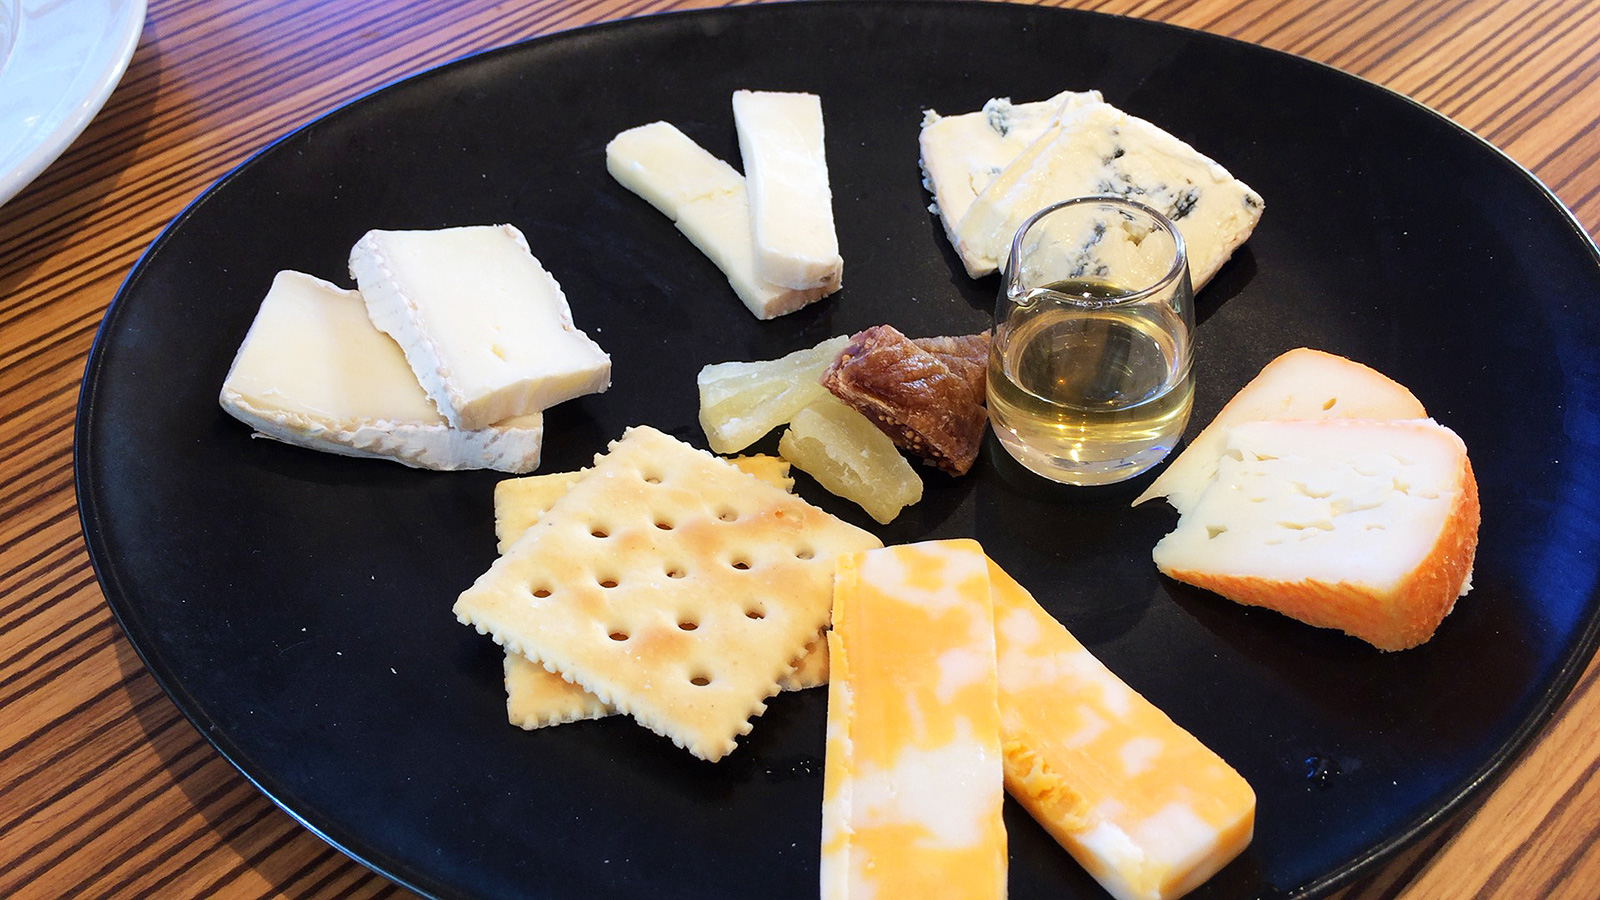 「チーズのお家」のチーズフォンデュとラクレット @大須赤門